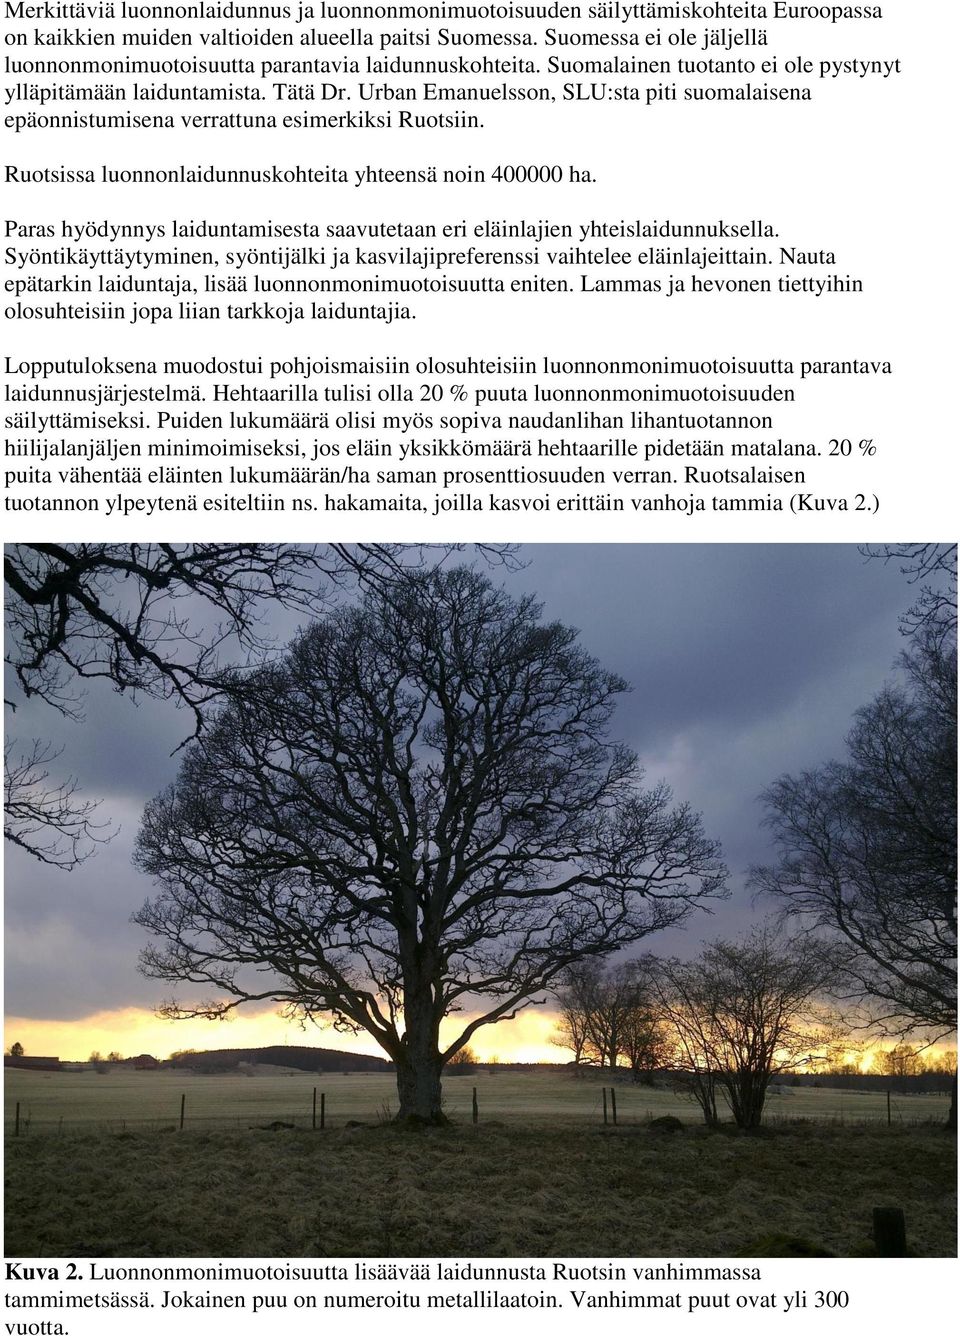 Urban Emanuelsson, SLU:sta piti suomalaisena epäonnistumisena verrattuna esimerkiksi Ruotsiin. Ruotsissa luonnonlaidunnuskohteita yhteensä noin 400000 ha.